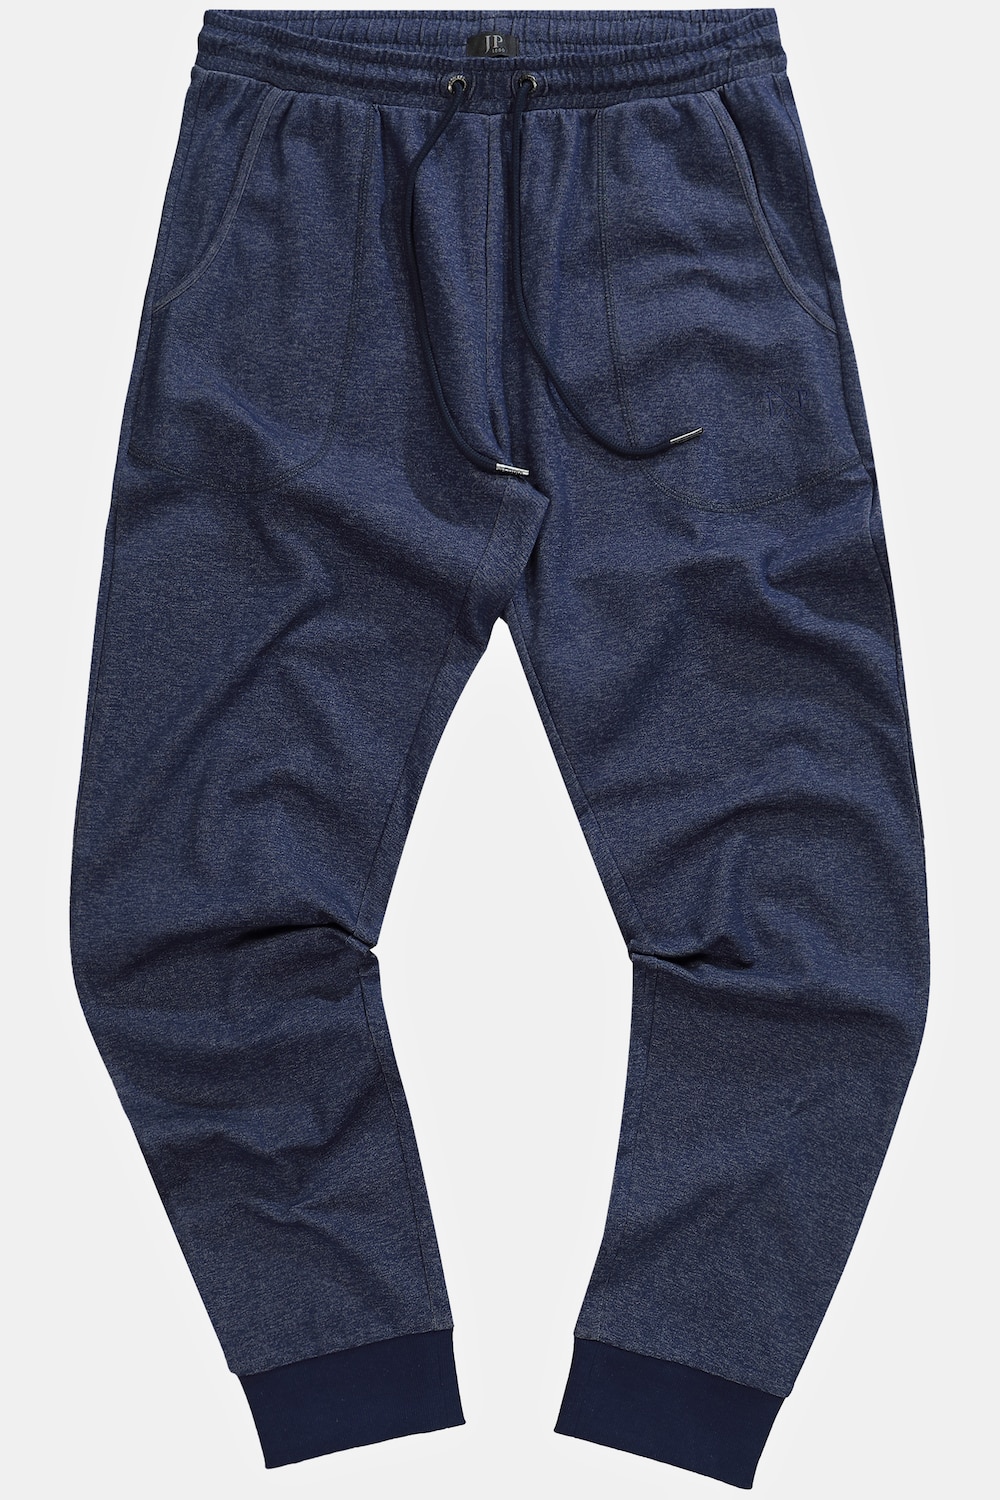 Grote Maten Pyjamabroek, Heren, blauw, Maat: 3XL, Katoen, JP1880